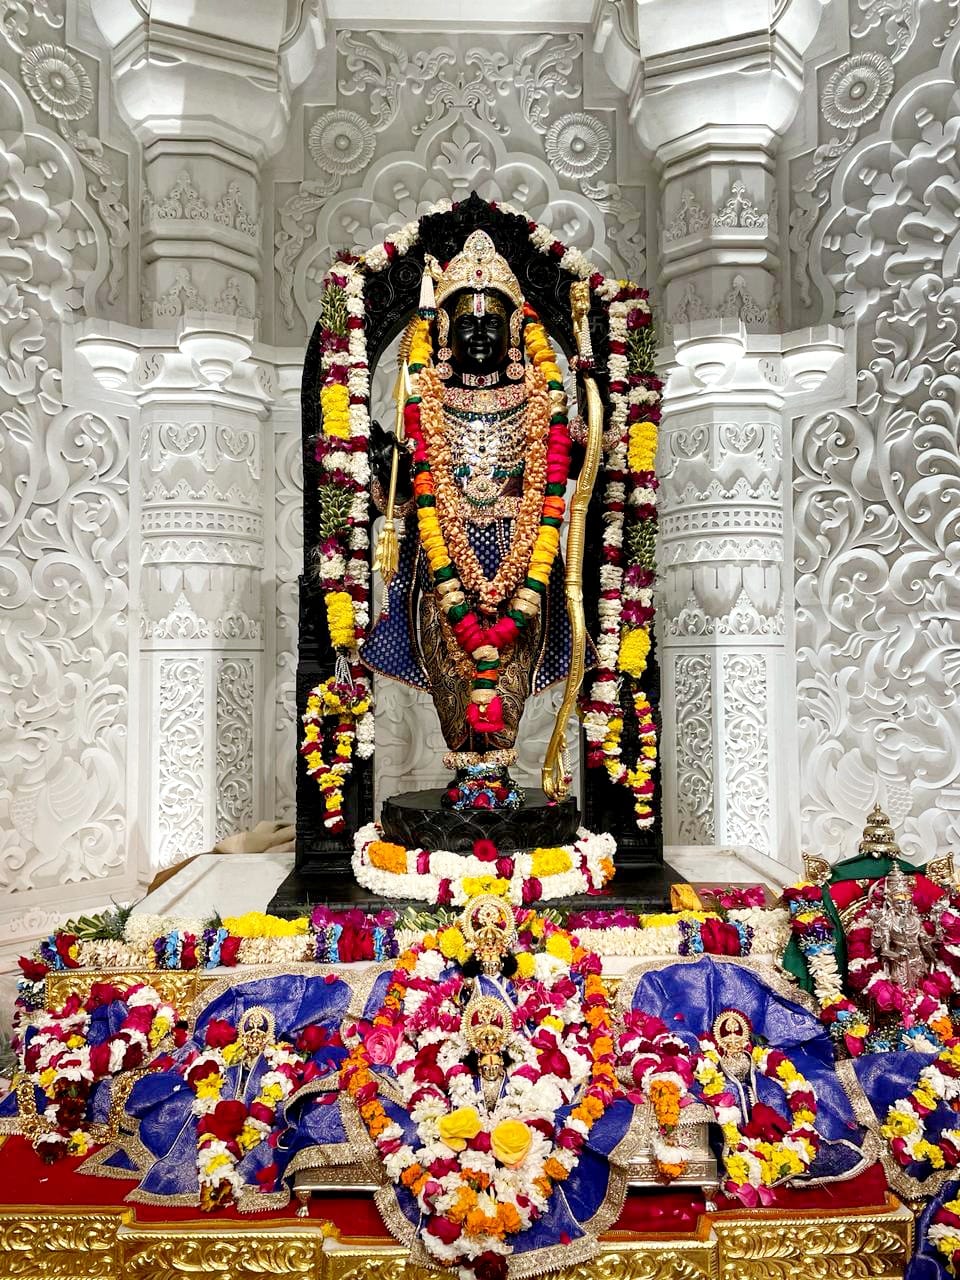 श्रीराम जन्मभूमि मन्दिर:प्राण प्रतिष्ठा के बाद 1 करोड़ 12 लाख भक्तों ने किये दर्शन